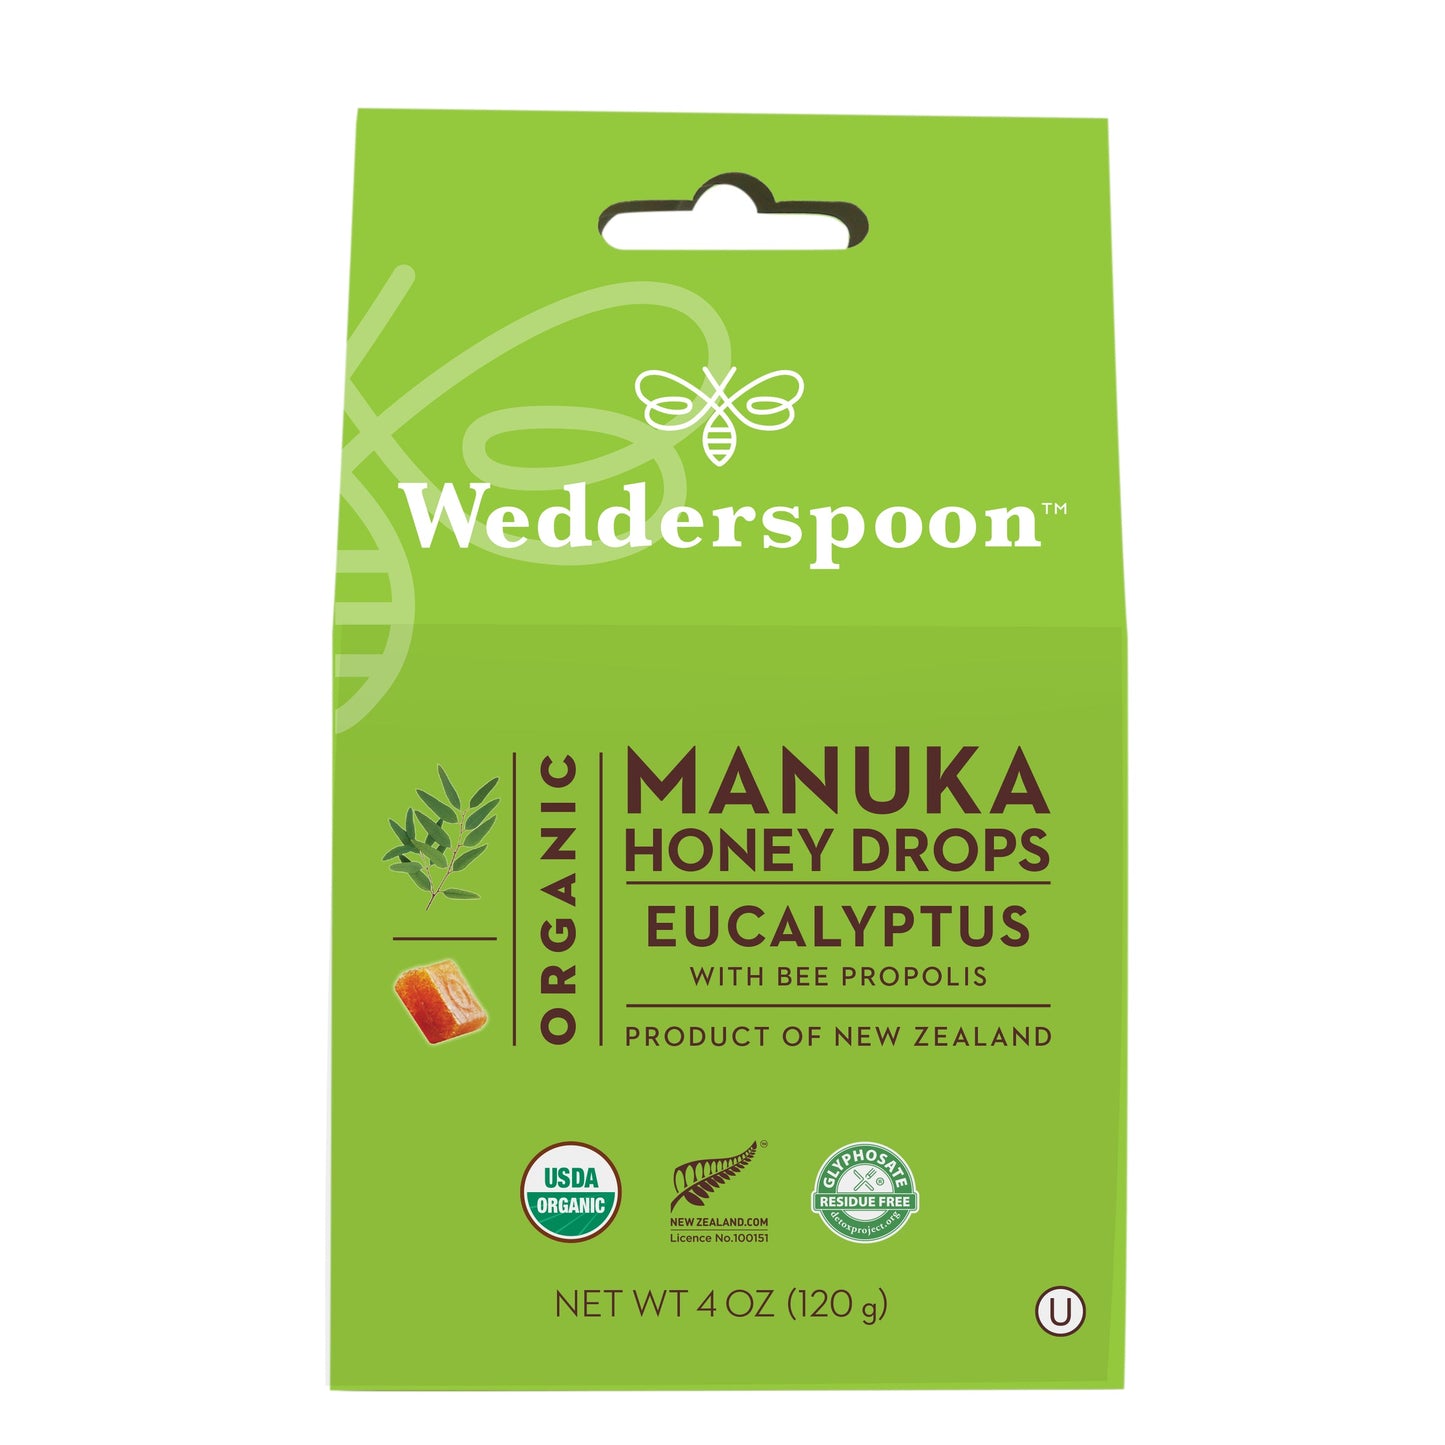 Organic Manuka Honey Drops Eucalyptus